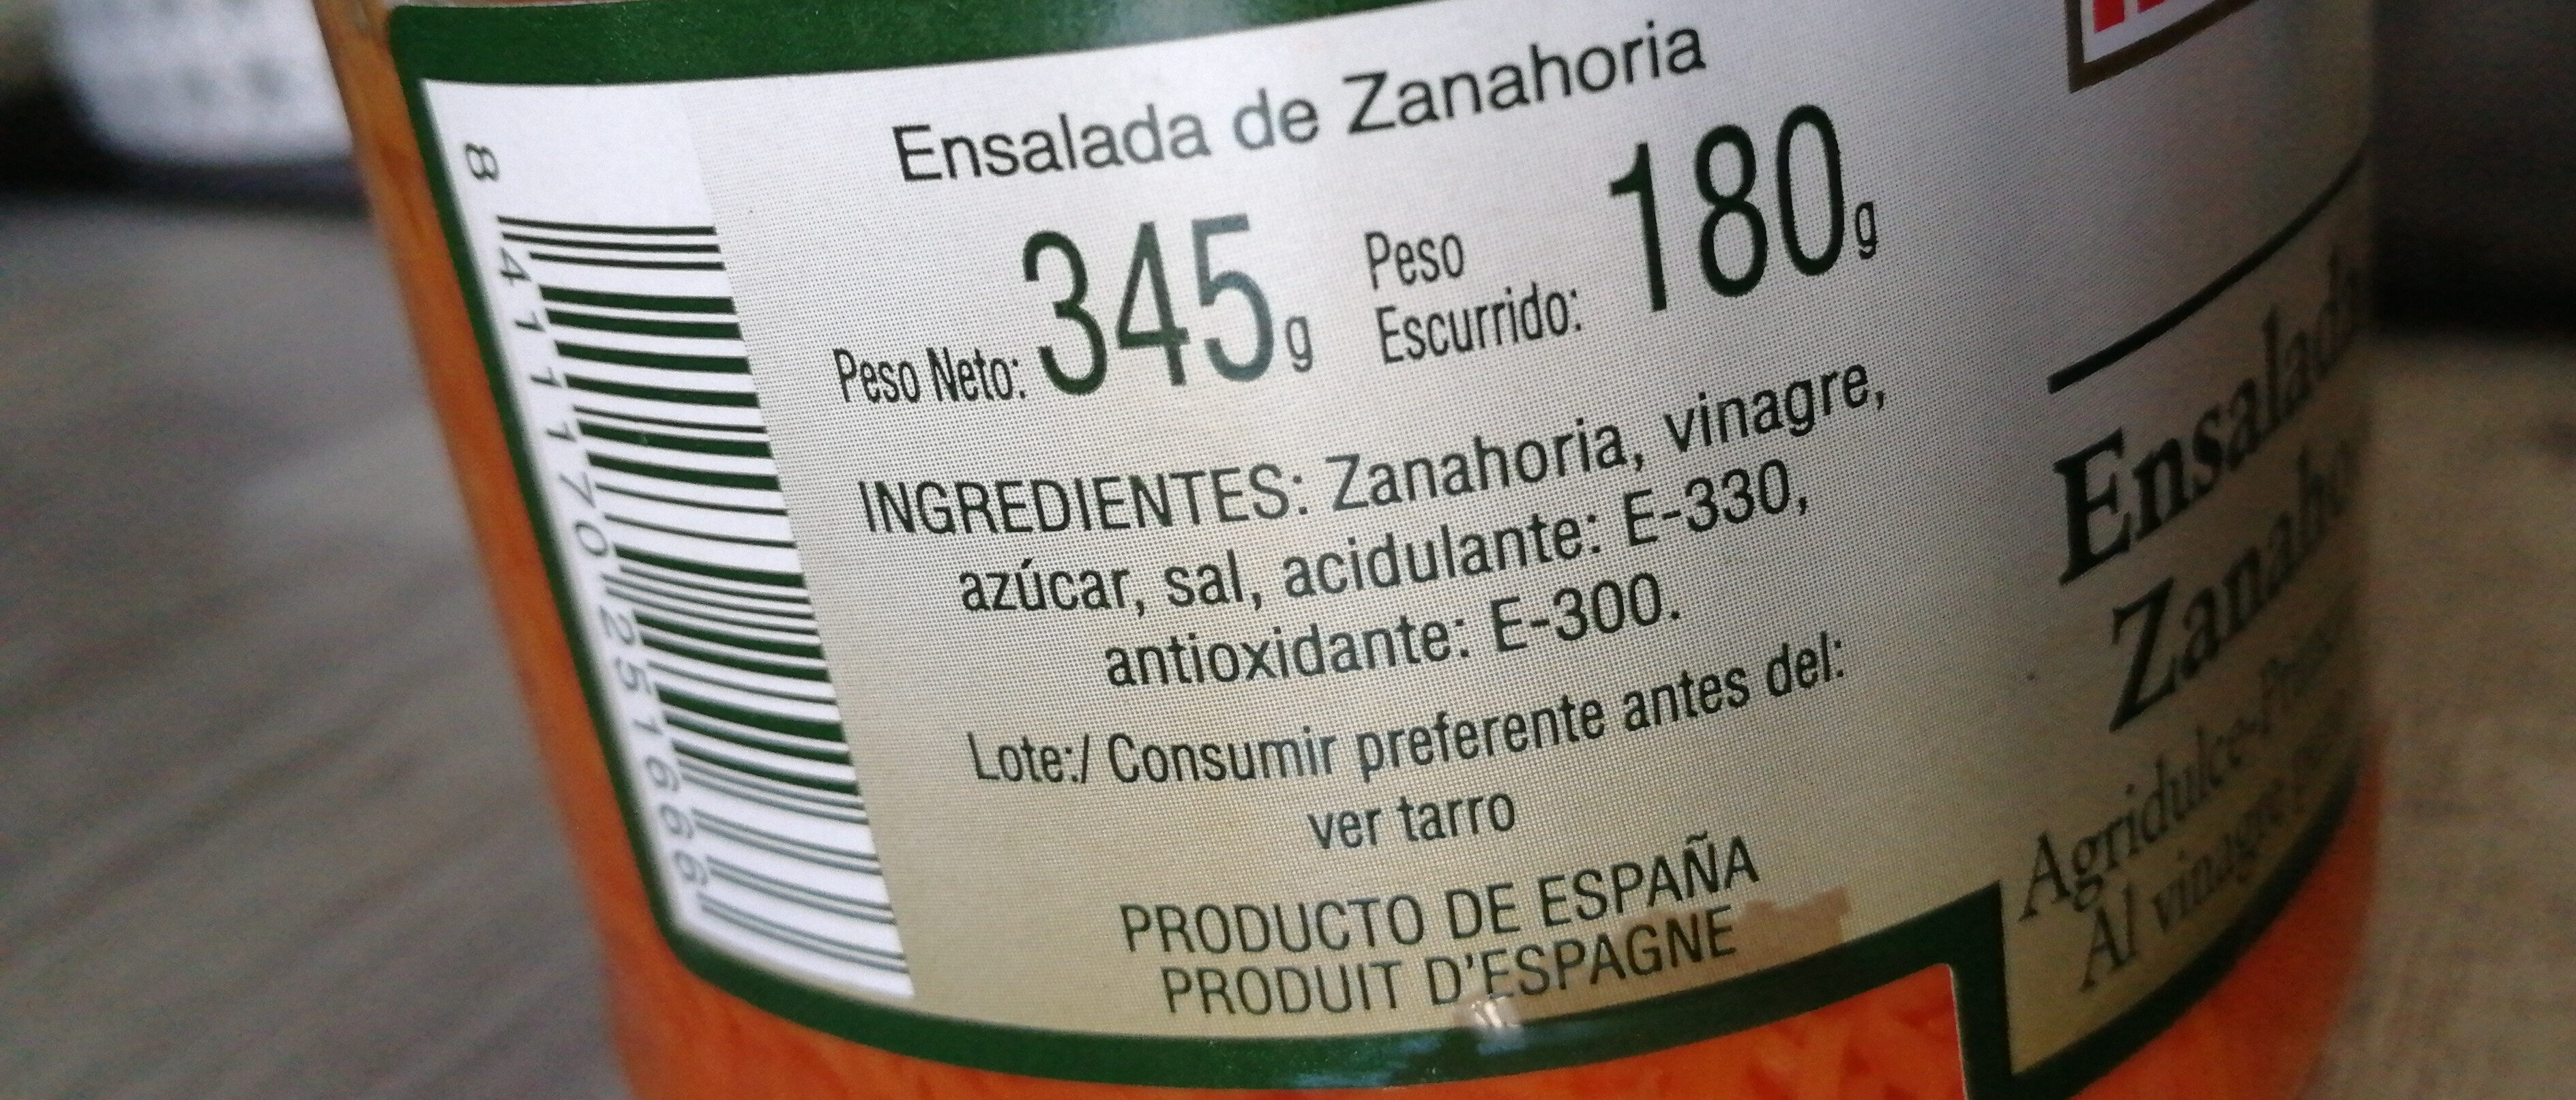 Ensalada de zanahoria - Ingredients - en